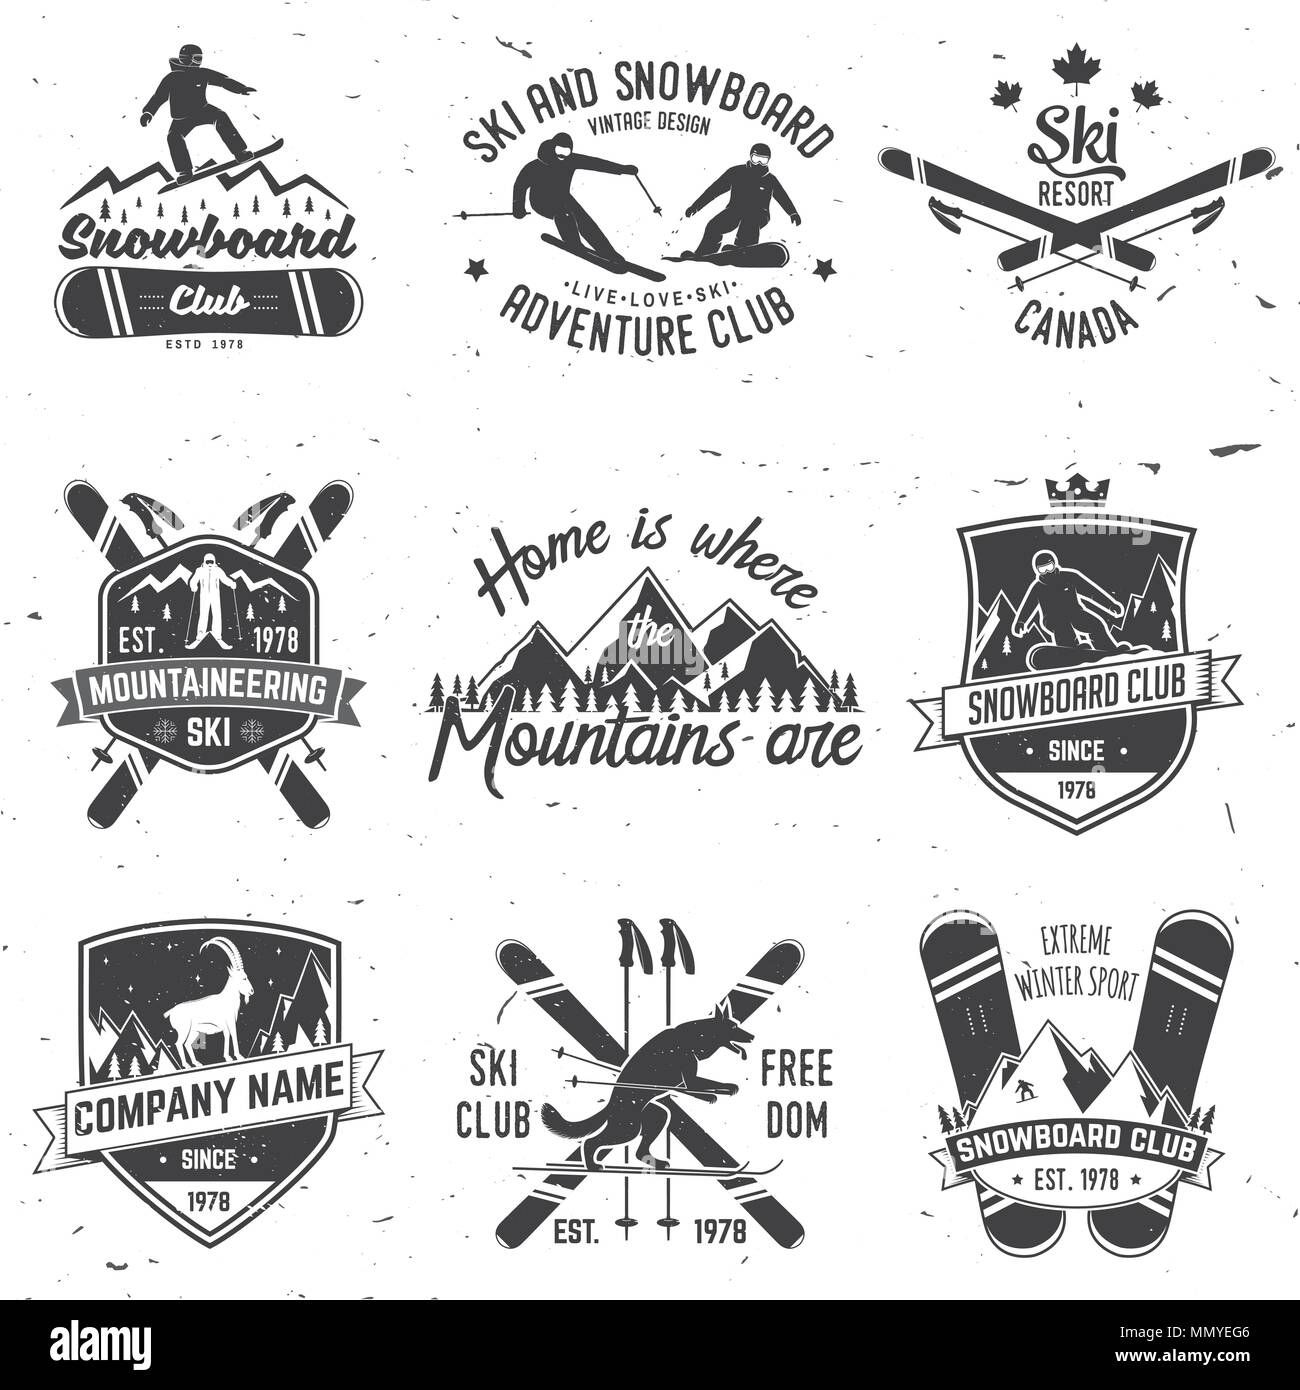 Ski- und Snowboard Club Emblem. Vector Illustration. Konzept für T-Shirt, Druck, Stempel, Abzeichen oder T-Stück. Vintage Typografie Design mit Snowboarder und skie Stock Vektor